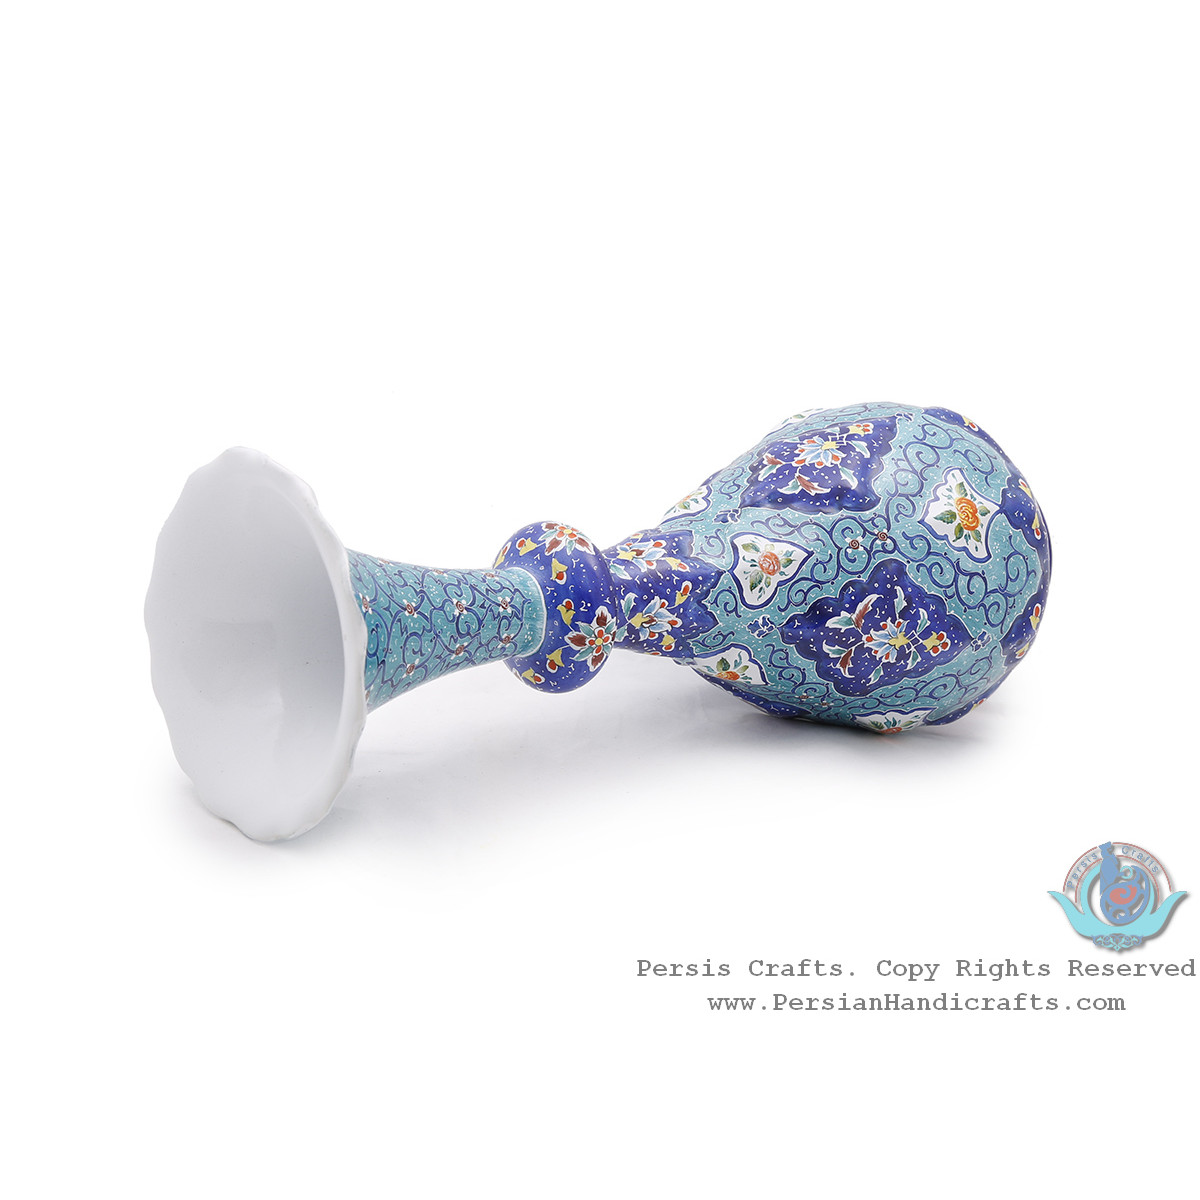 Privileged Flower Vase With Azure Toranj Design - HE4002-Persian Handicrafts